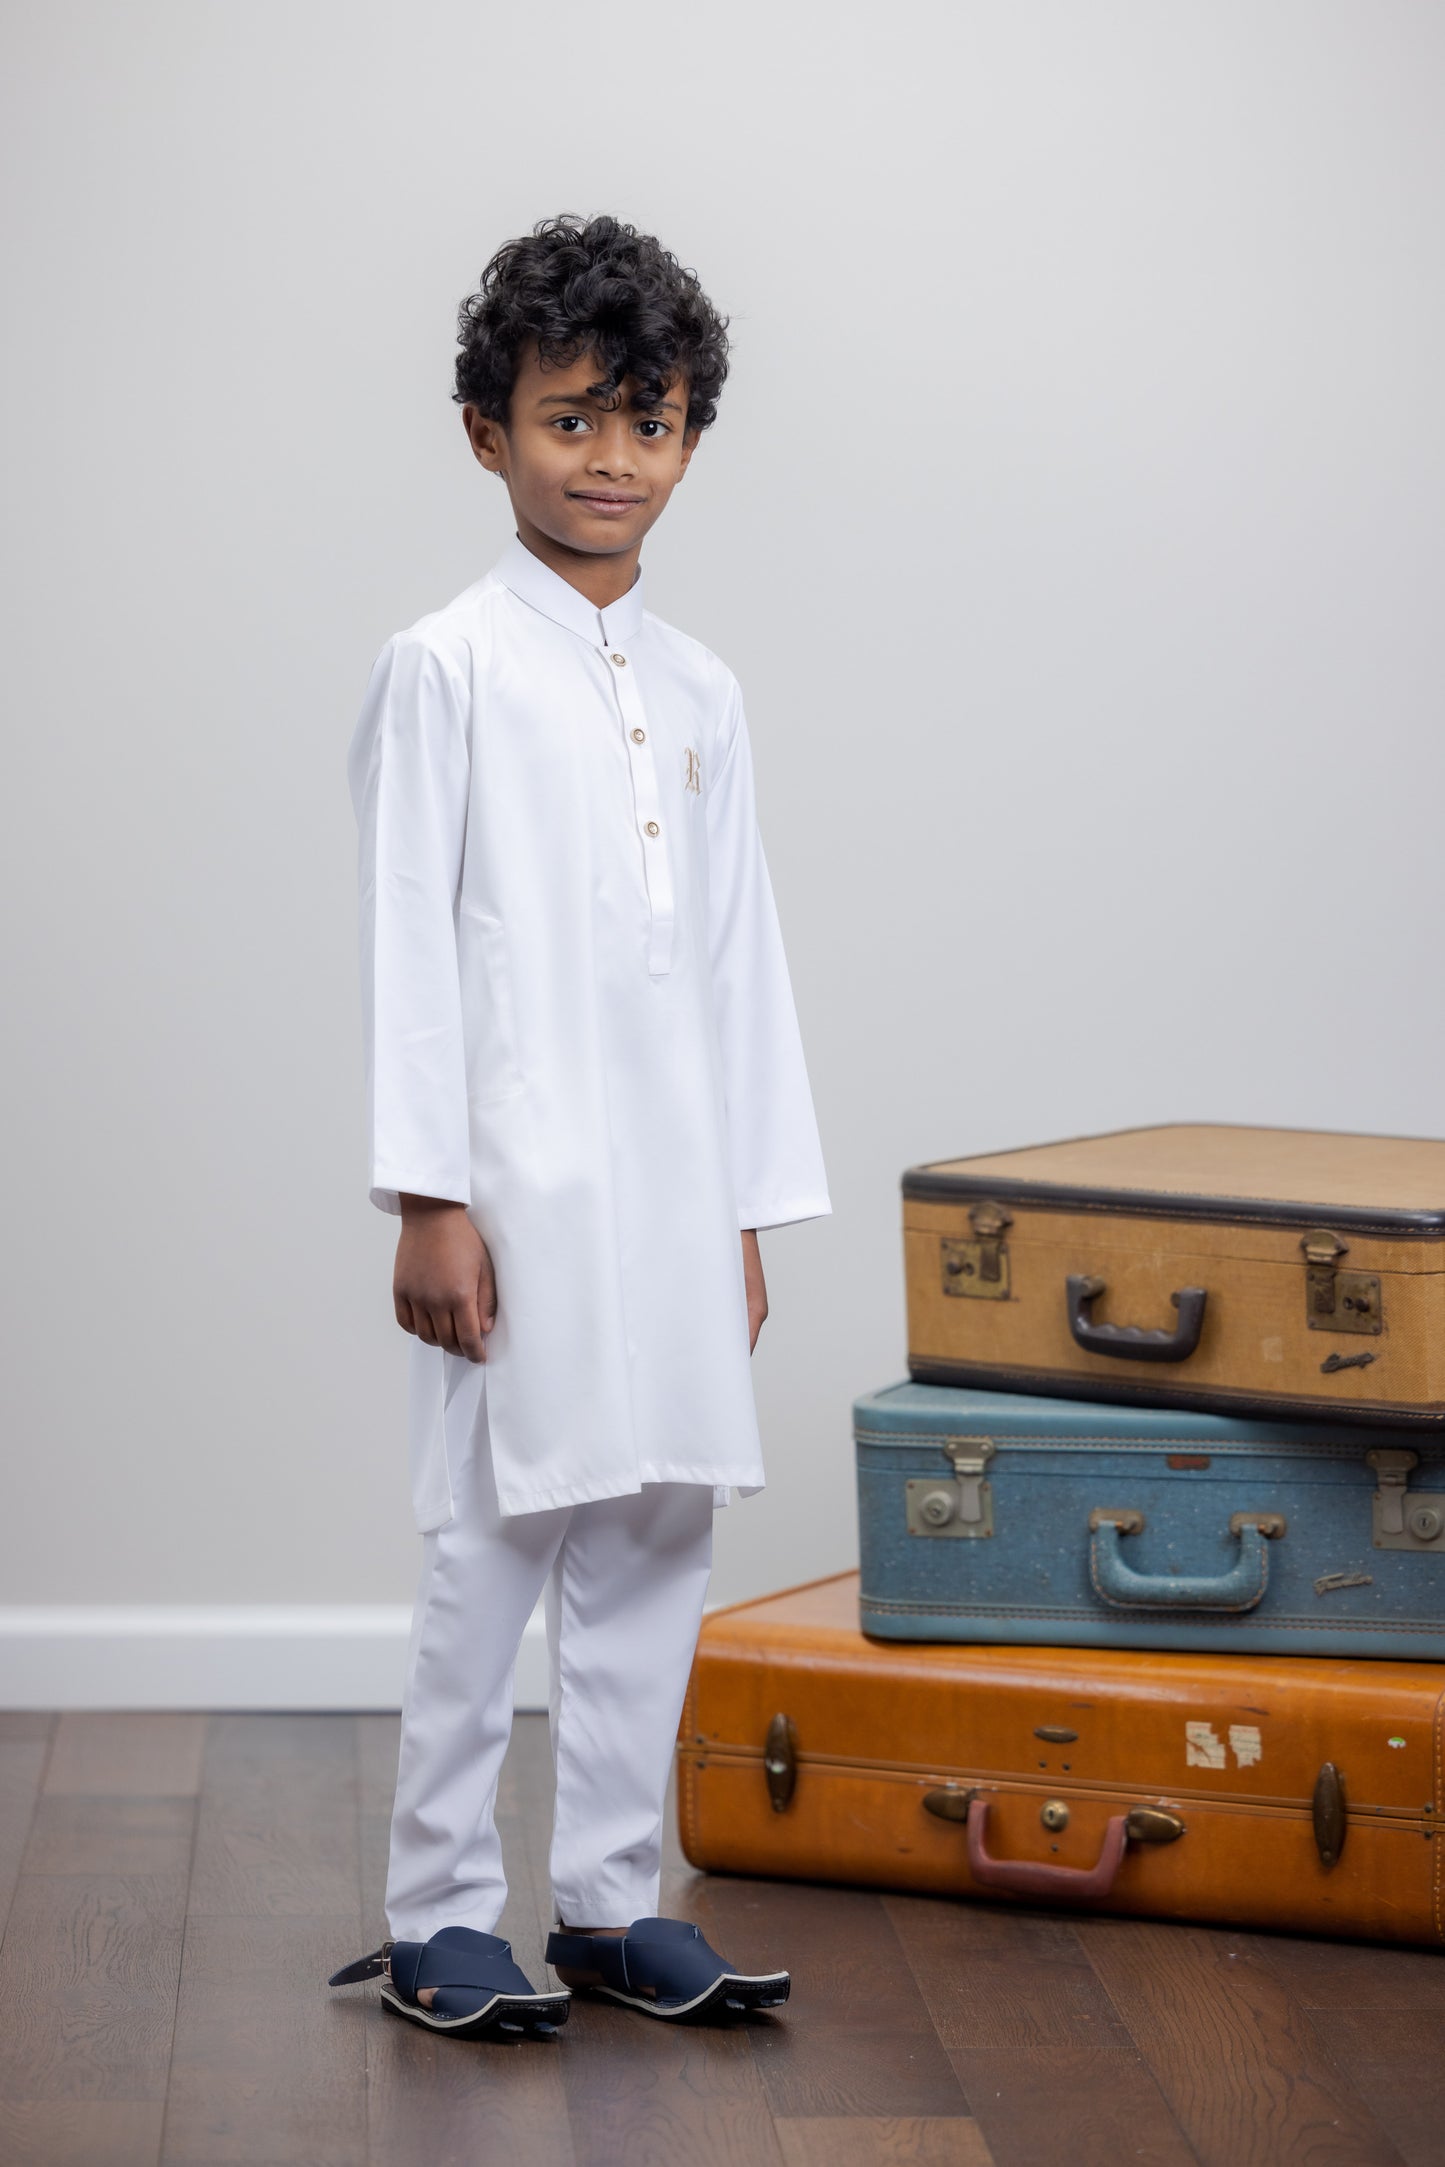 White Suit With Urdu Alphabet Vest